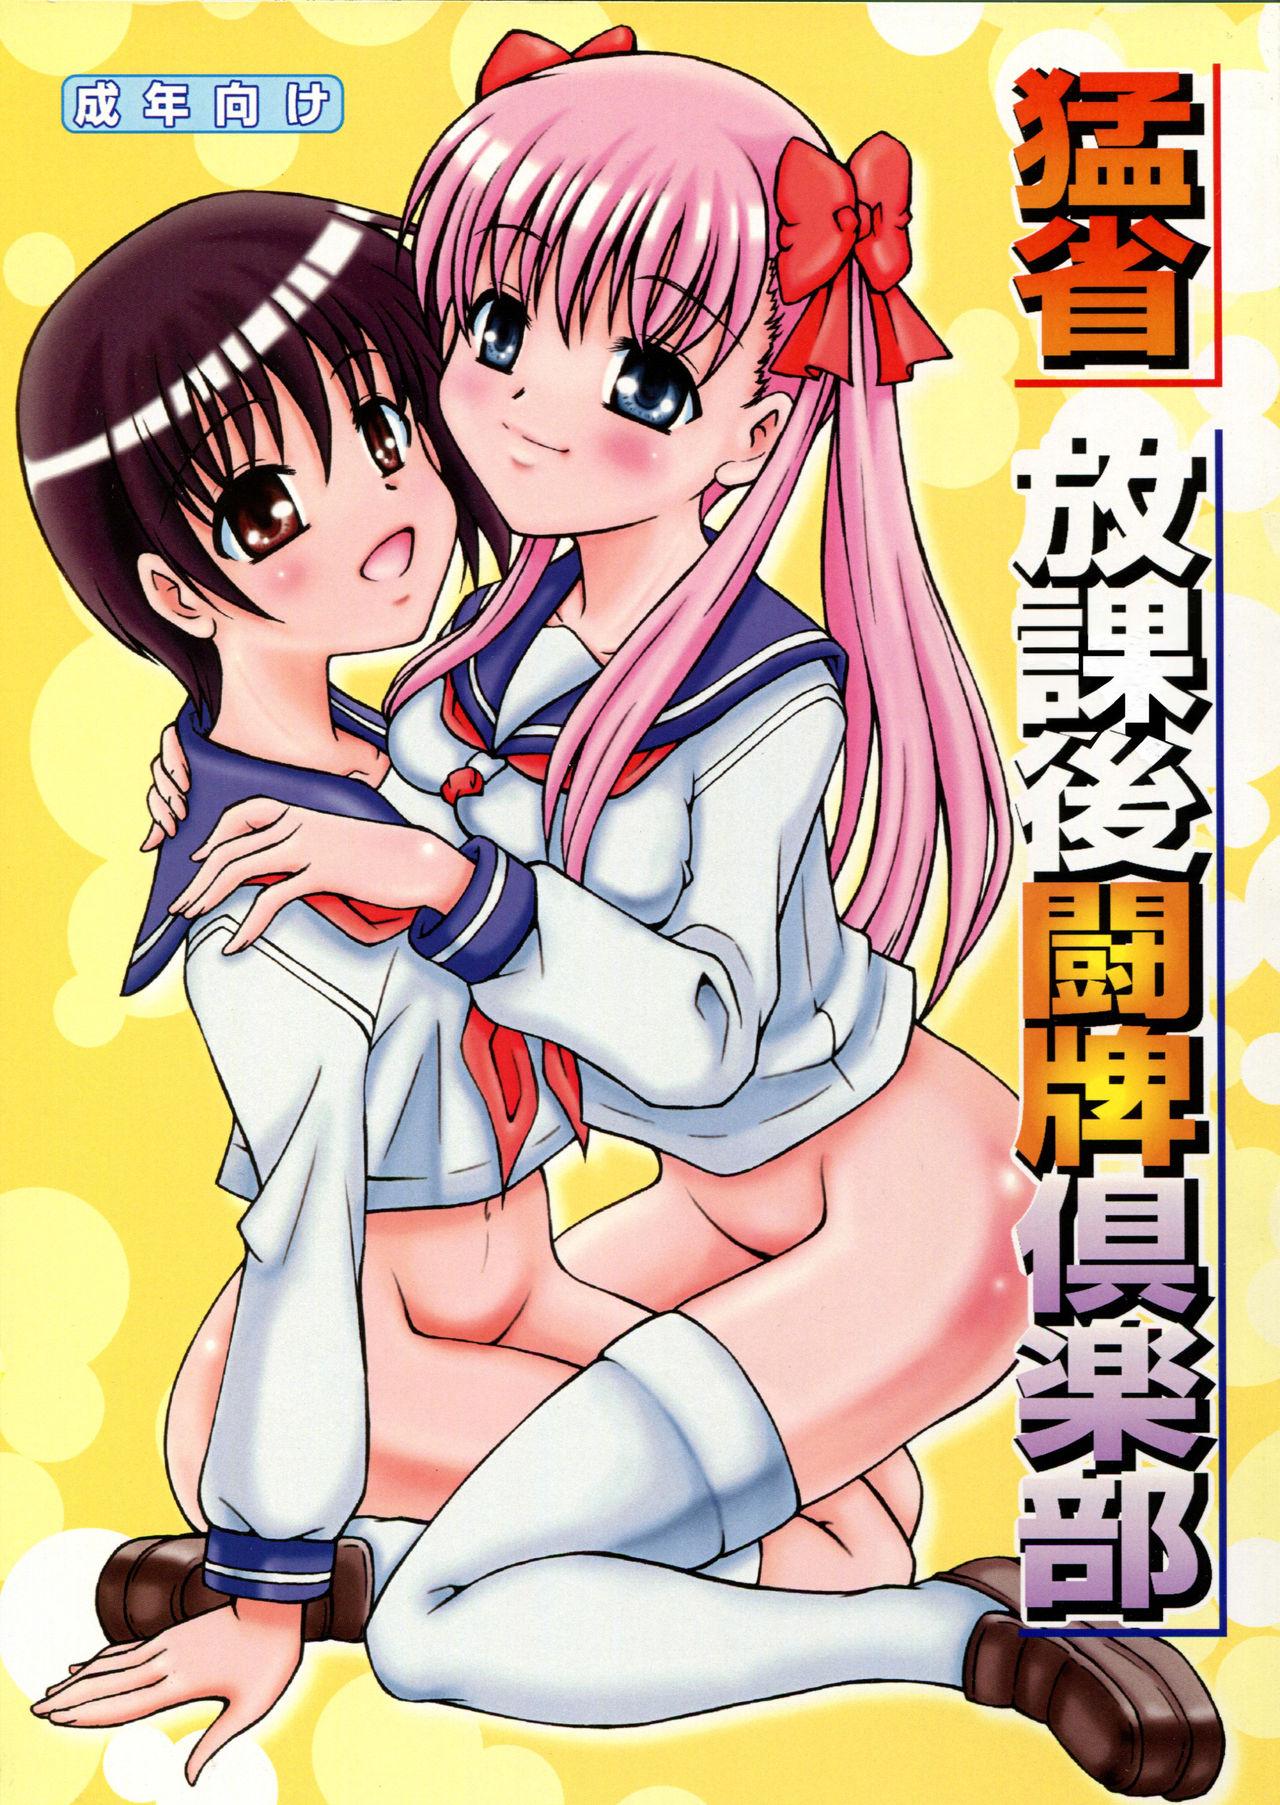 Sperm Mousei Houkago Touhai Club - Saki Sluts - Picture 1